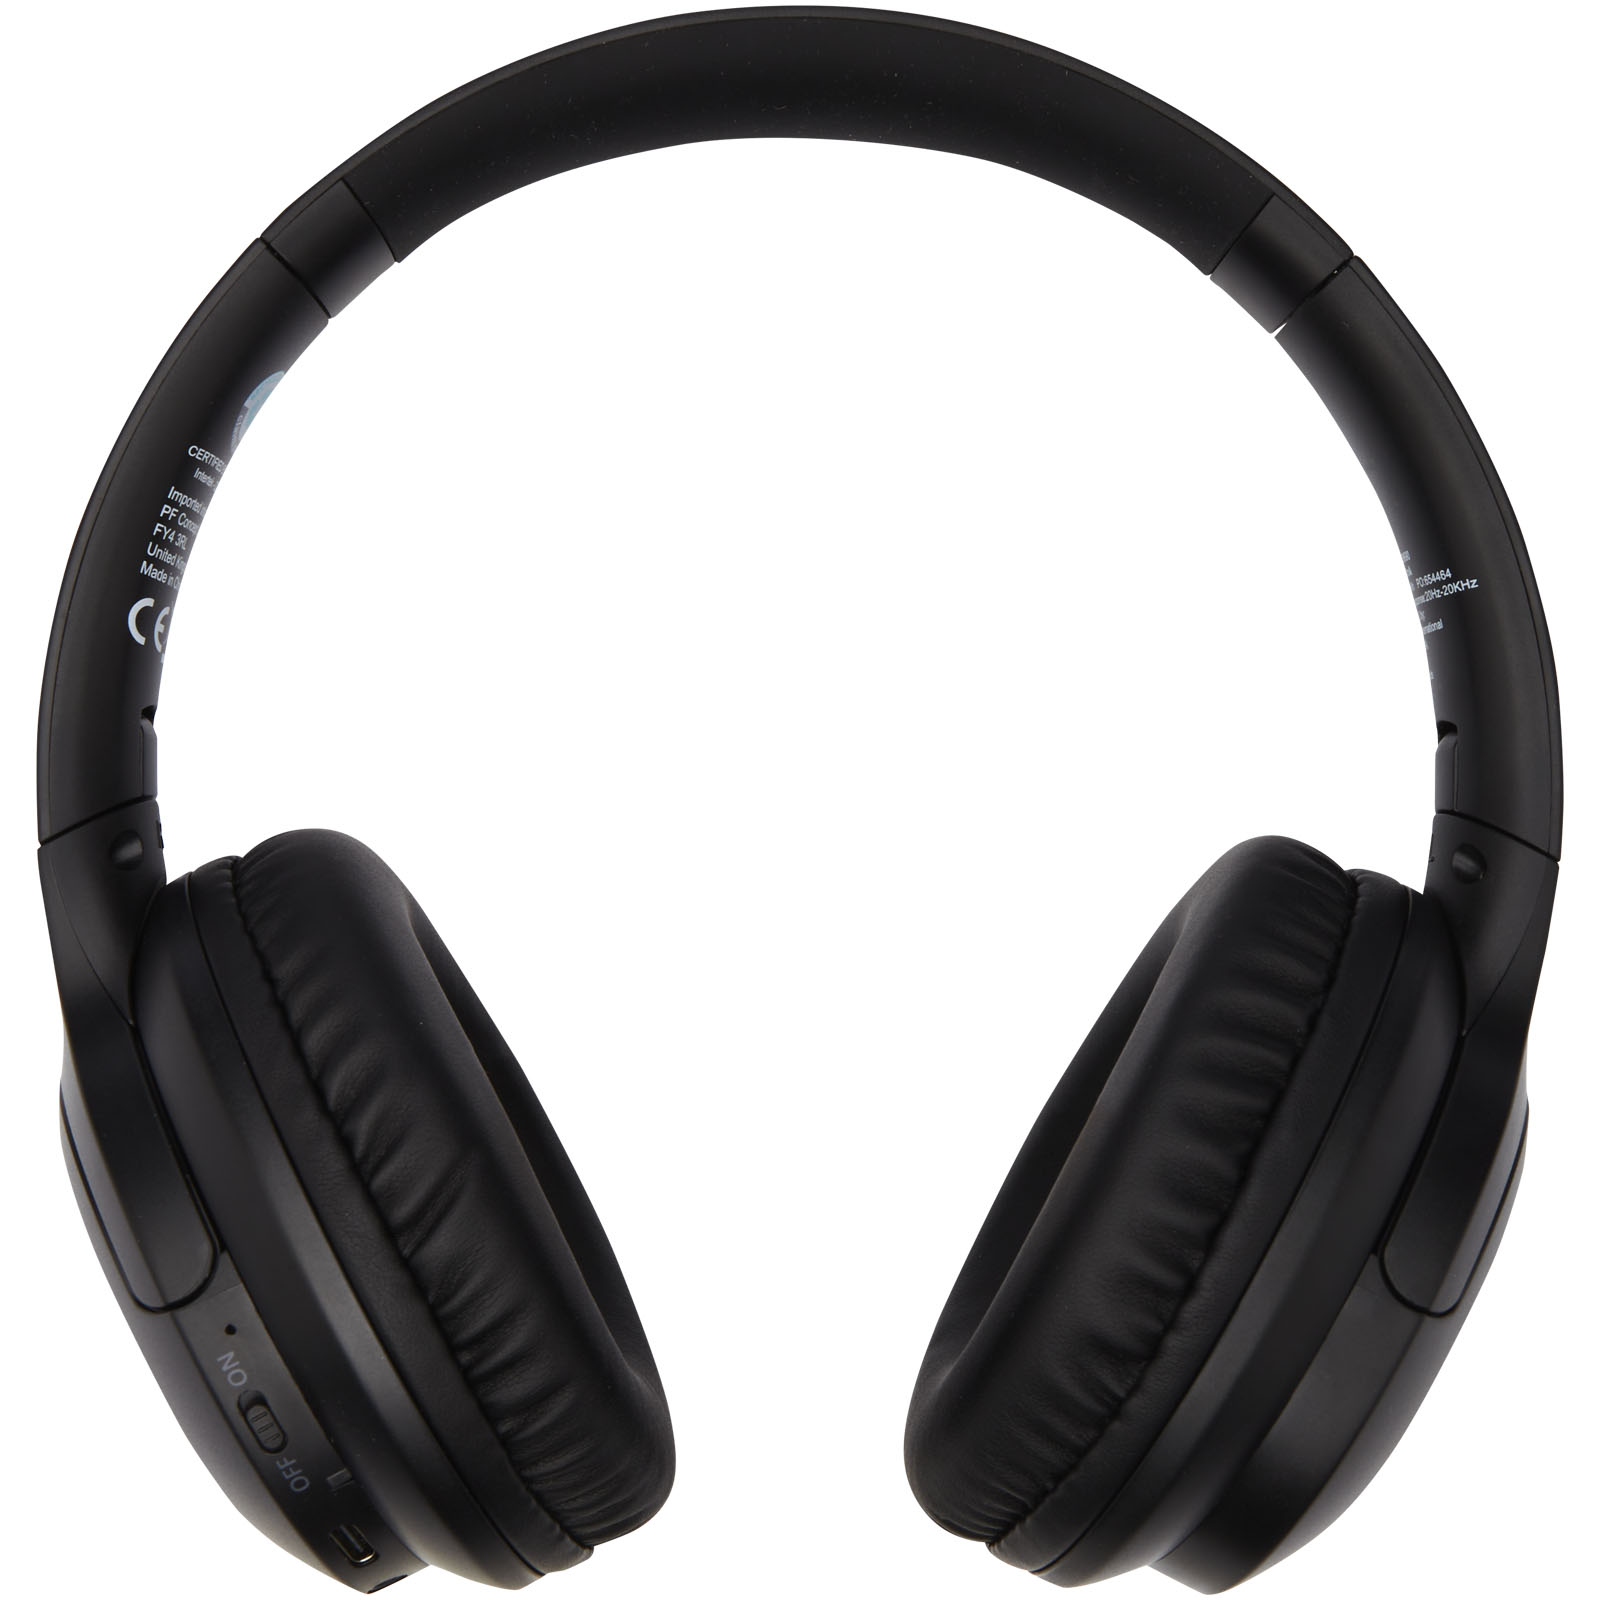 Audífonos Bluetooth* con cable reflejante y auriculares rubber